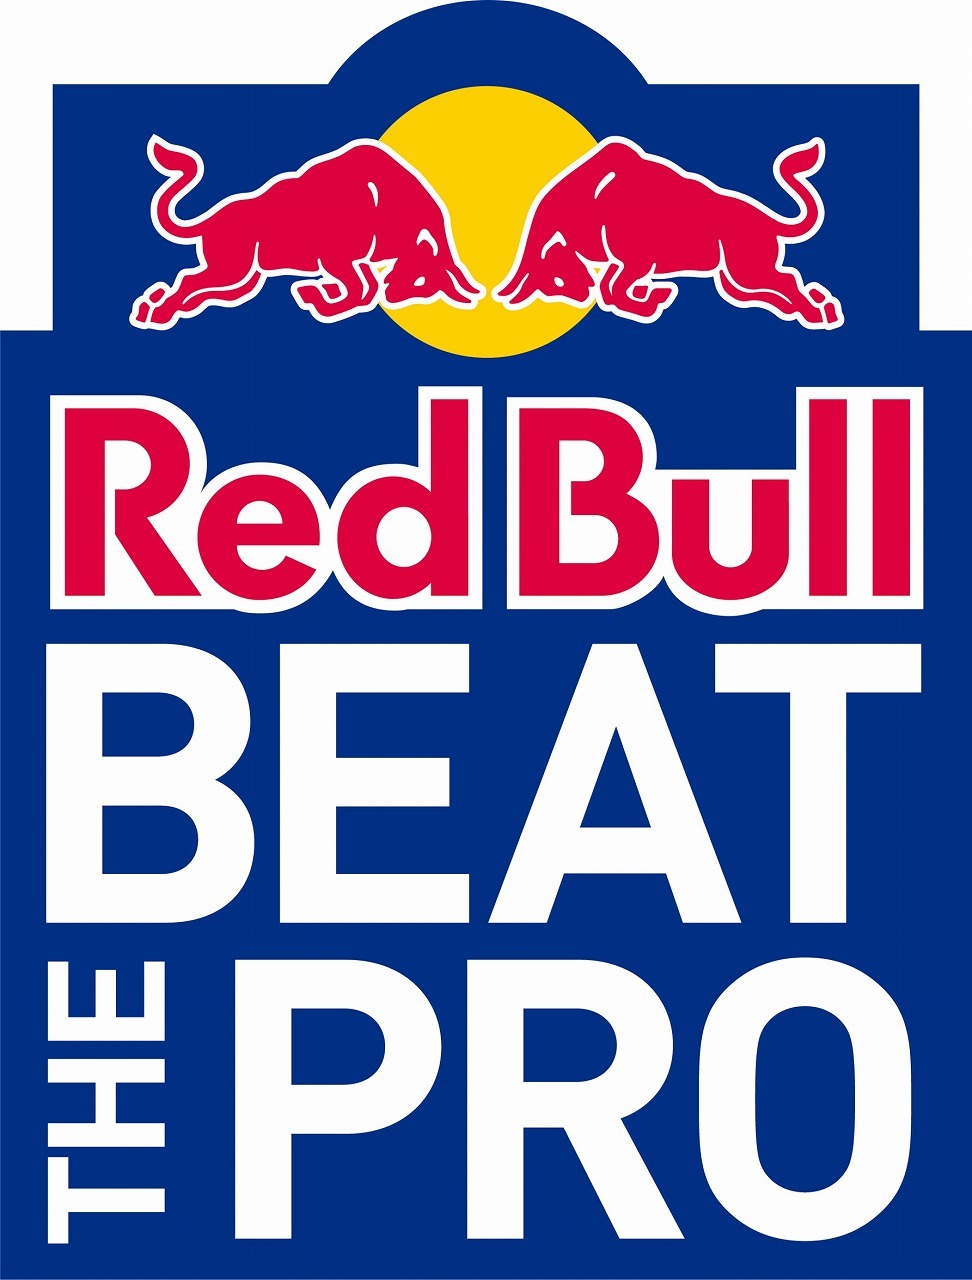 Red Bull Beat The Pro 4月29日開始 グランツーリスモで現役プロドライバーに挑戦 5枚目の写真 画像 レスポンス Response Jp